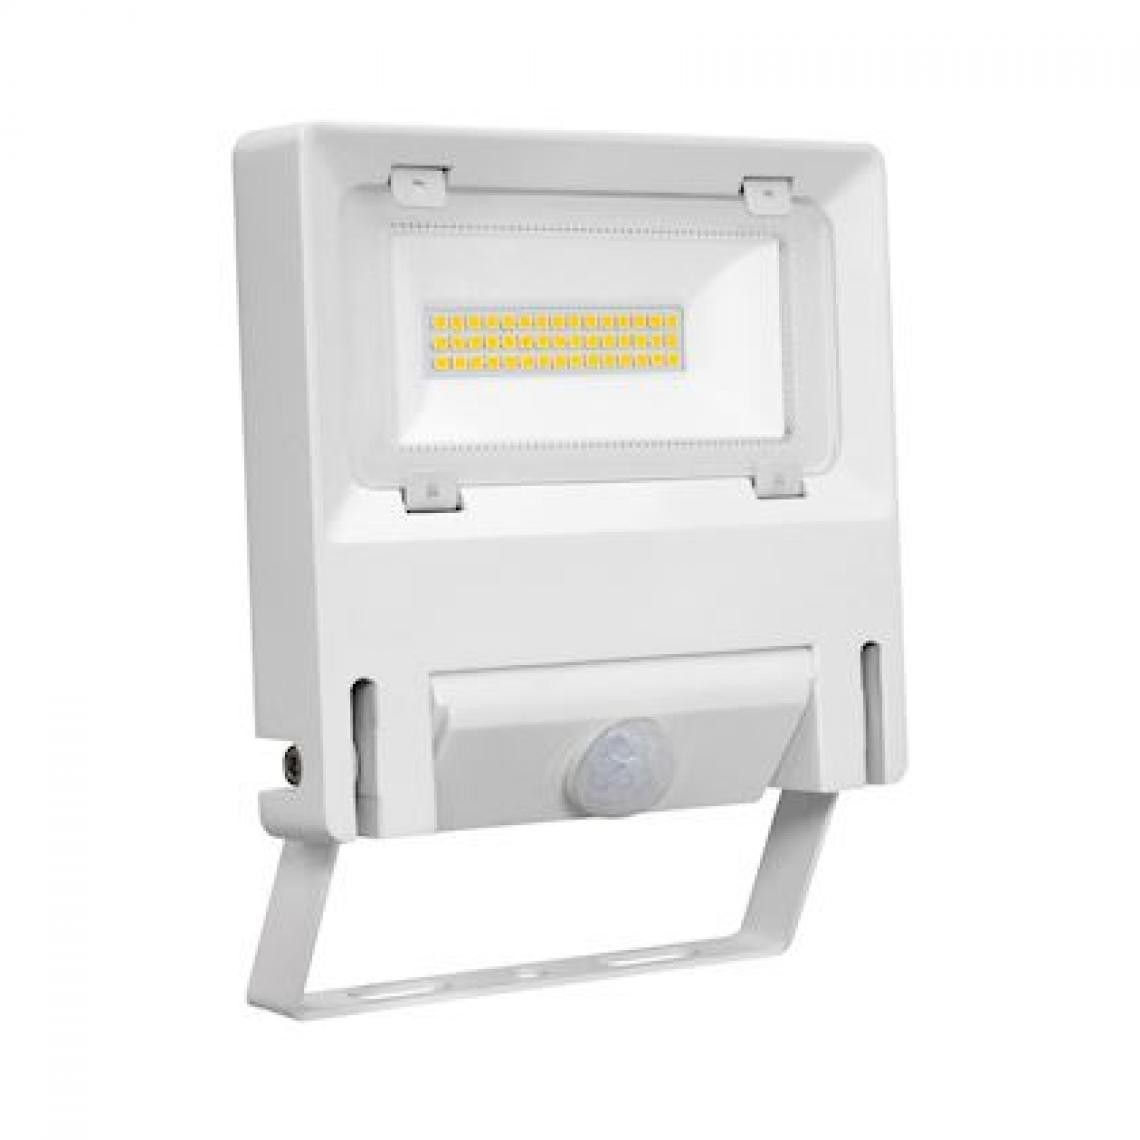 Aric - projecteur à led - aric michelle - 30w - 3000k - blanc - sensor - aric 51243 - Projecteurs LED